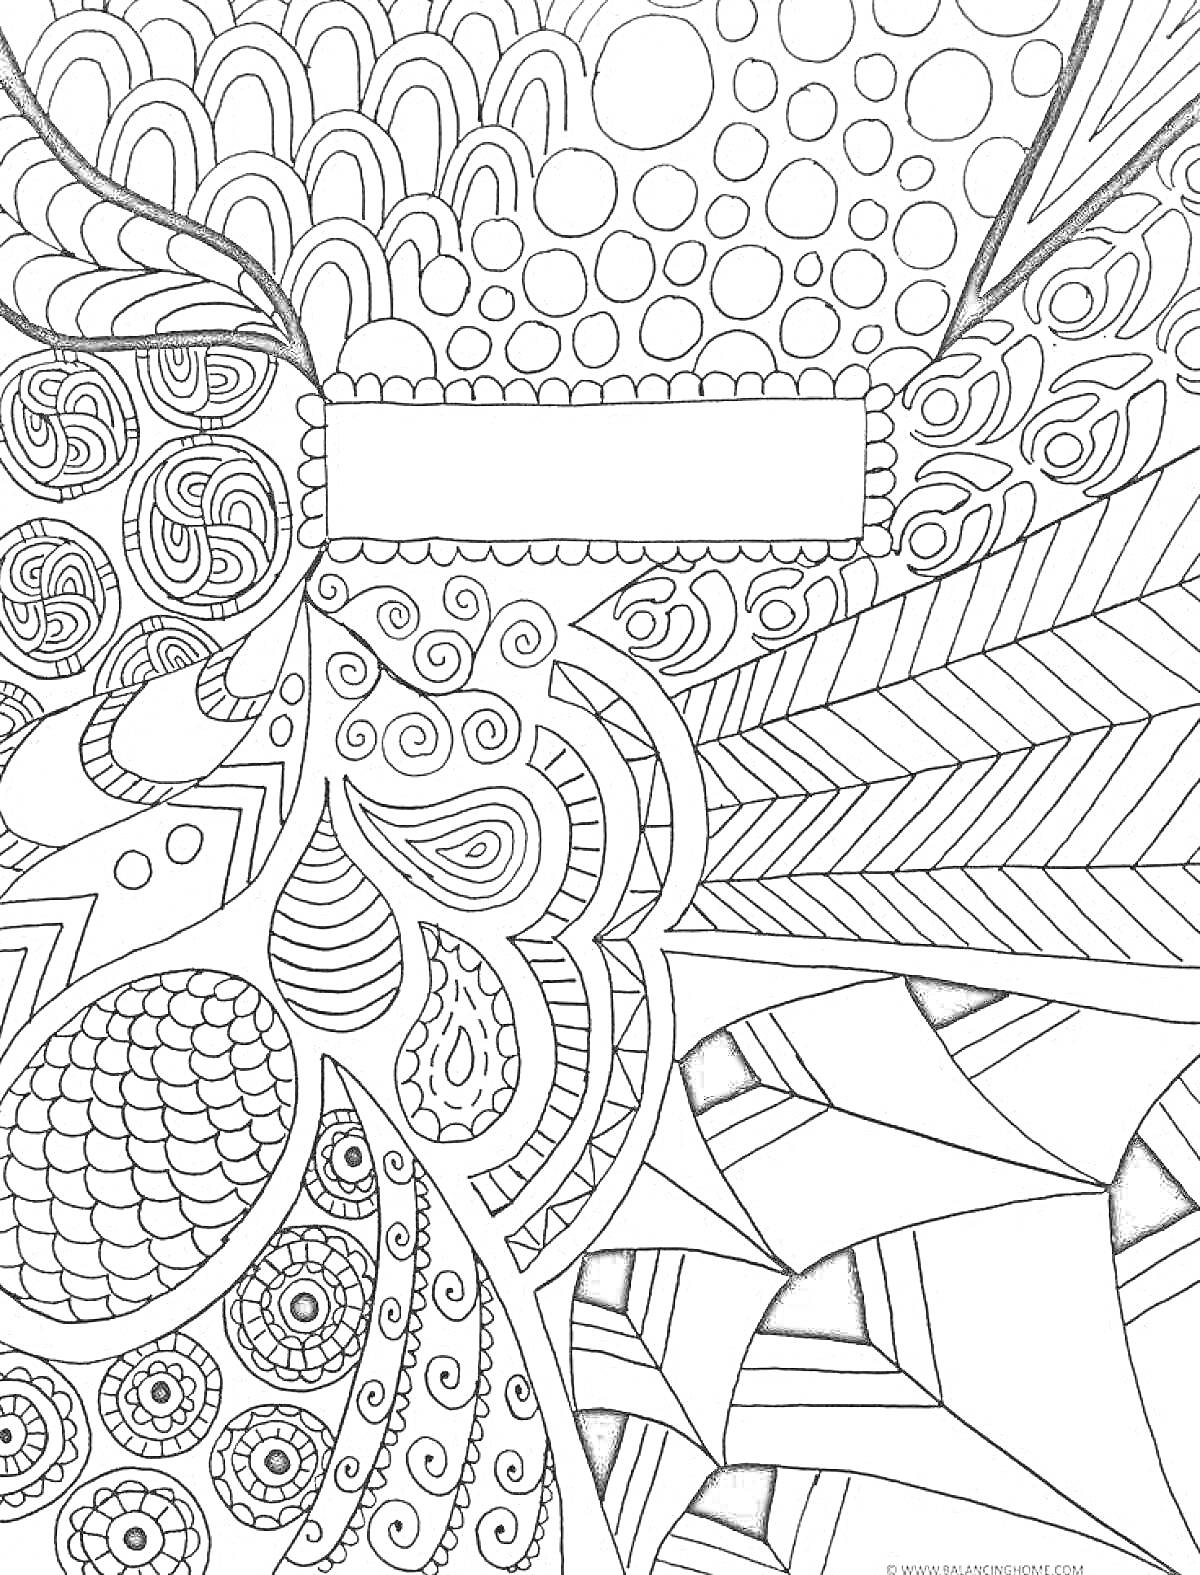 Раскраска обложка на тетрадь с абстрактным рисунком, мозаичные узоры, круги, волны, линии, точки, квадрат для подписи